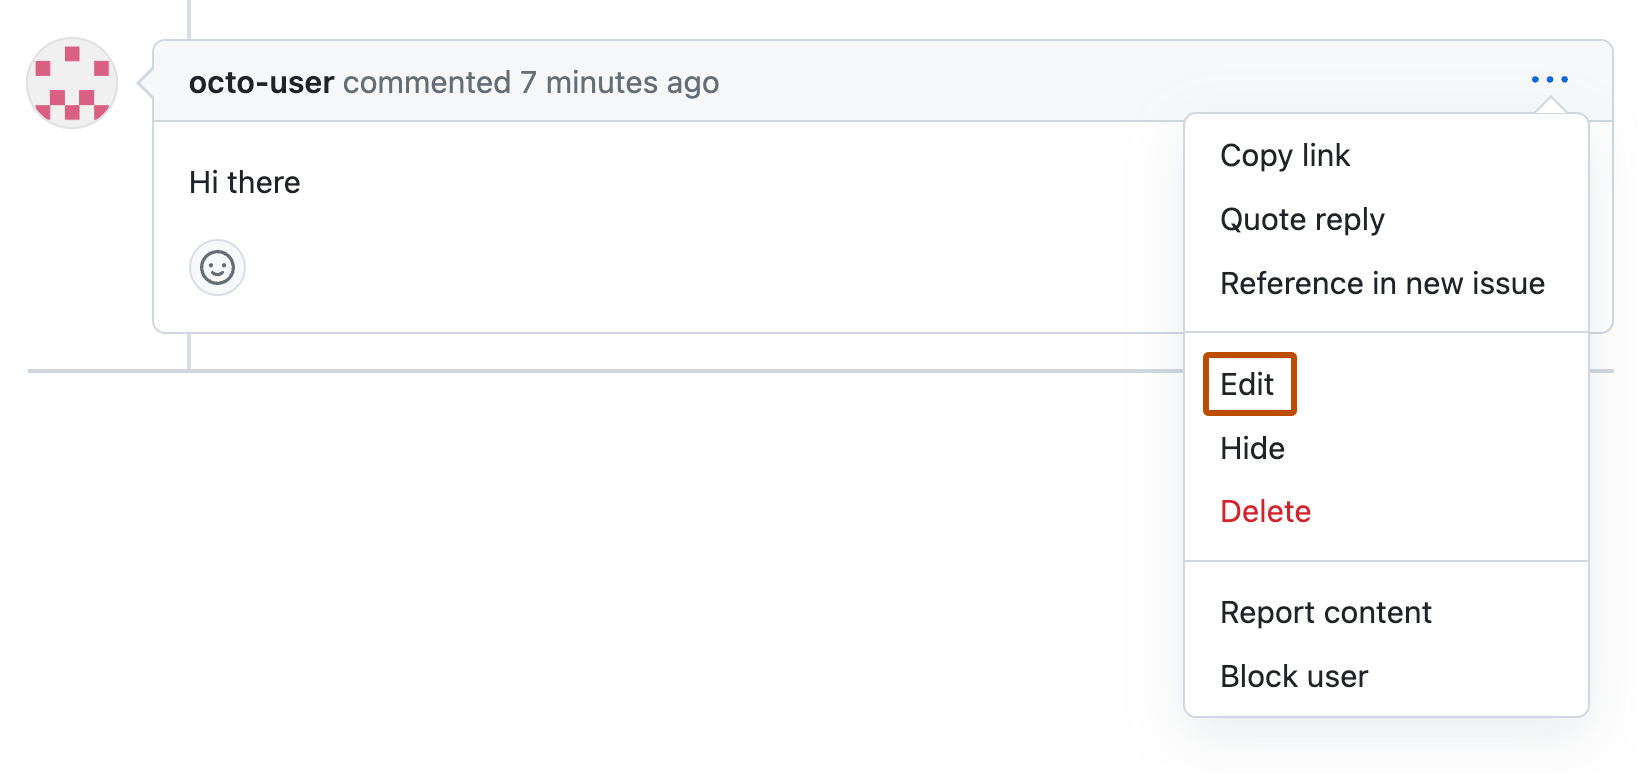 Captura de pantalla de un comentario de solicitud de cambios de octo-user. Debajo de un icono de tres puntos horizontales, se expande un menú desplegable y aparece la opción "Editar" con un contorno naranja.